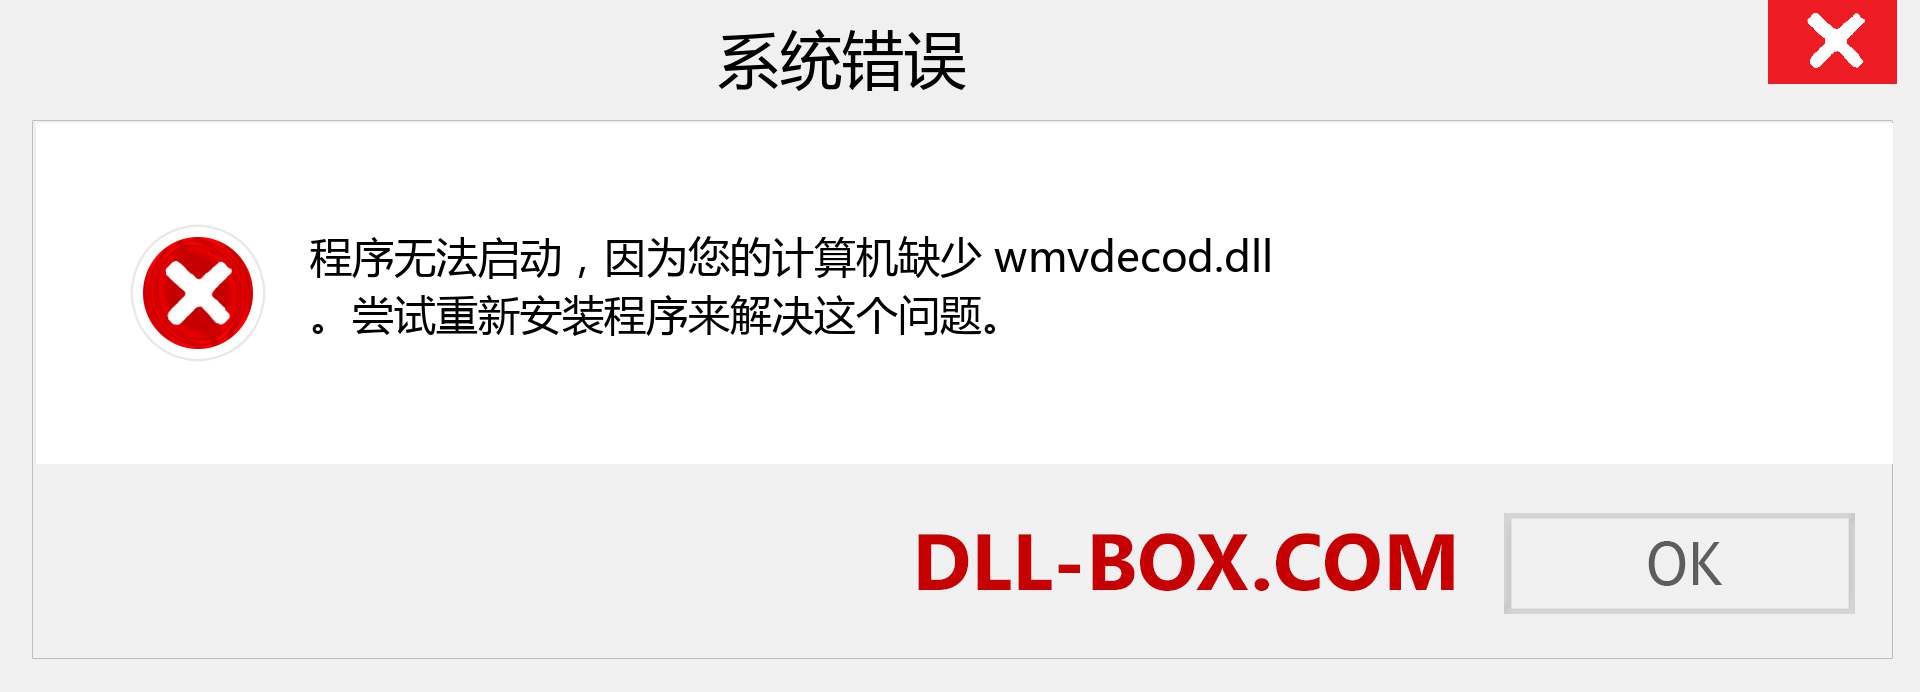 wmvdecod.dll 文件丢失？。 适用于 Windows 7、8、10 的下载 - 修复 Windows、照片、图像上的 wmvdecod dll 丢失错误